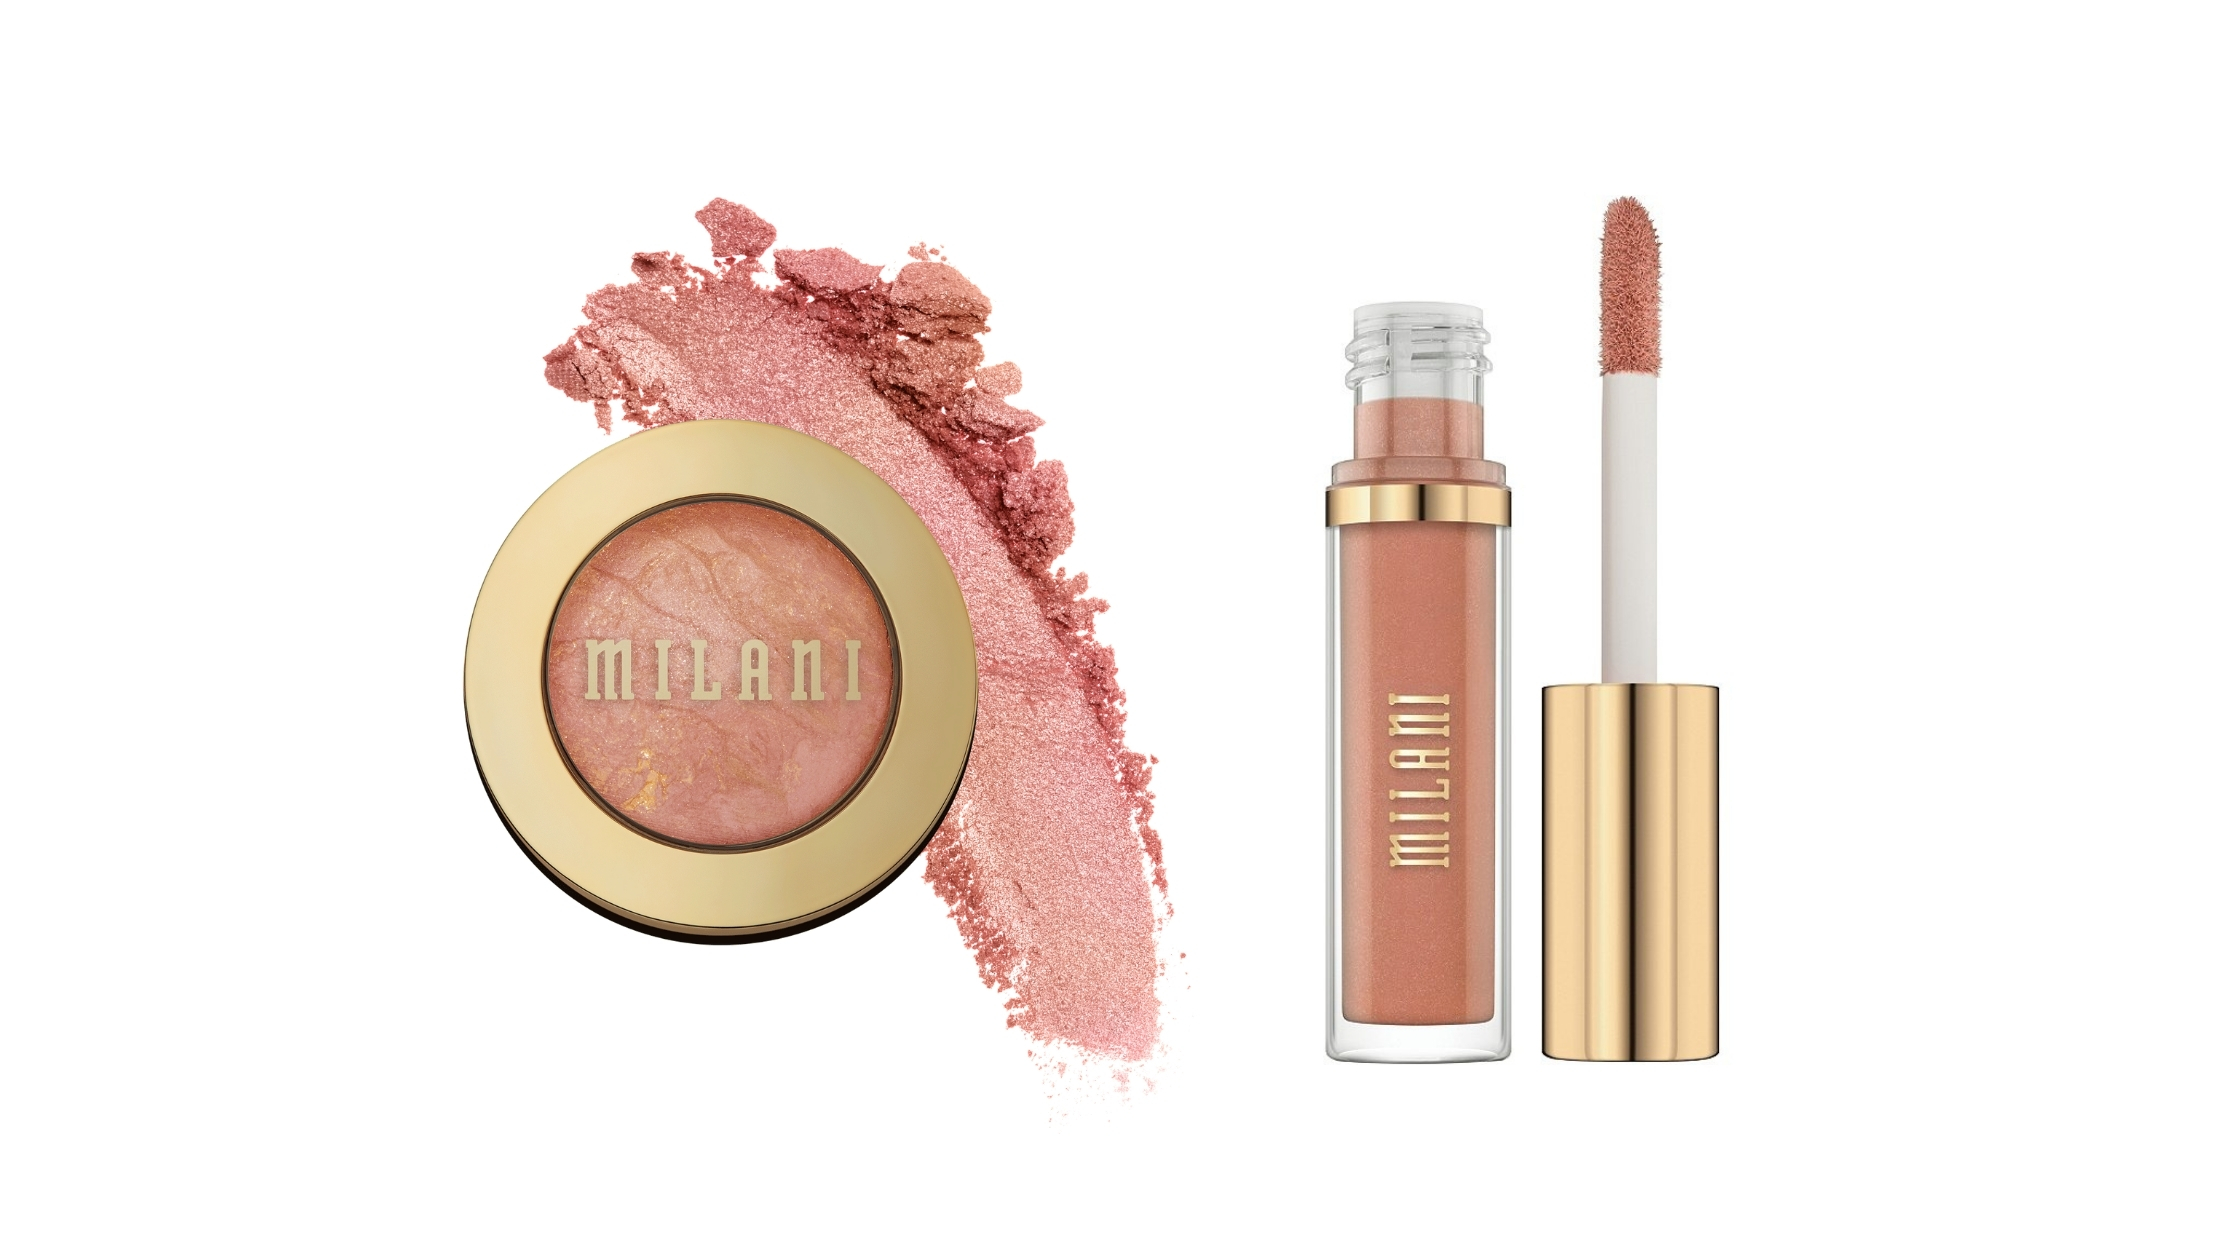 Milani Baked Blush and Lip Gloss